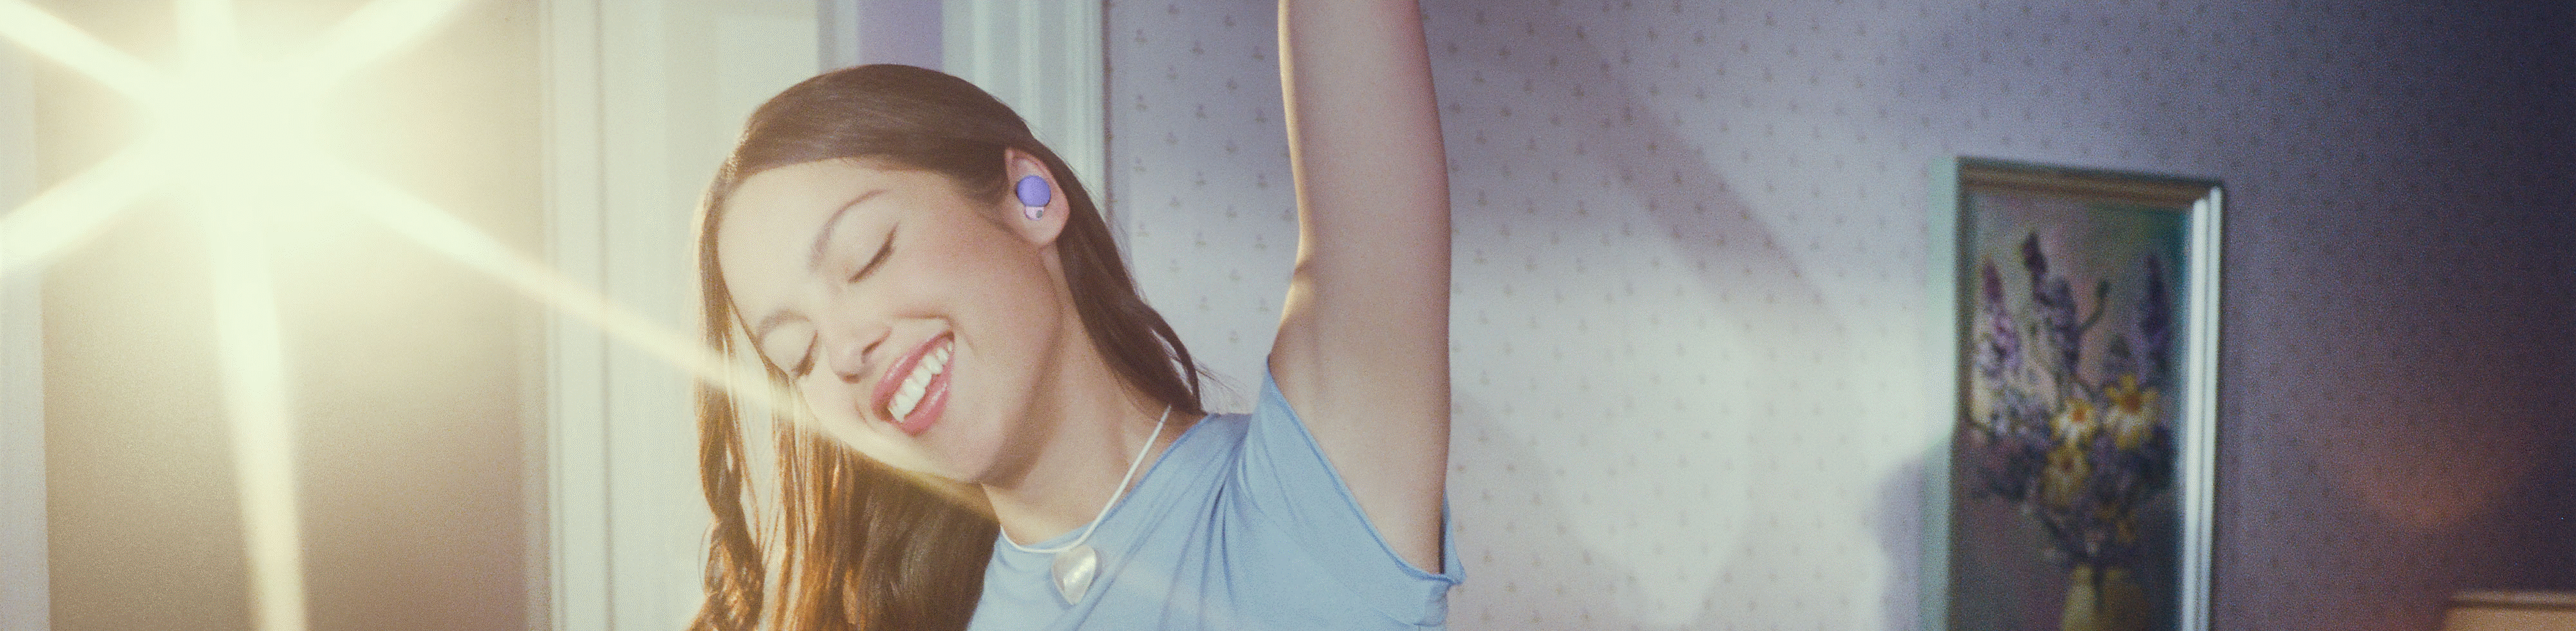 밝은 조명이 비치는 배경에 한 팔을 머리 위로 올린 채 LinkBuds S 이어폰(보라색)을 착용한 Olivia 이미지.